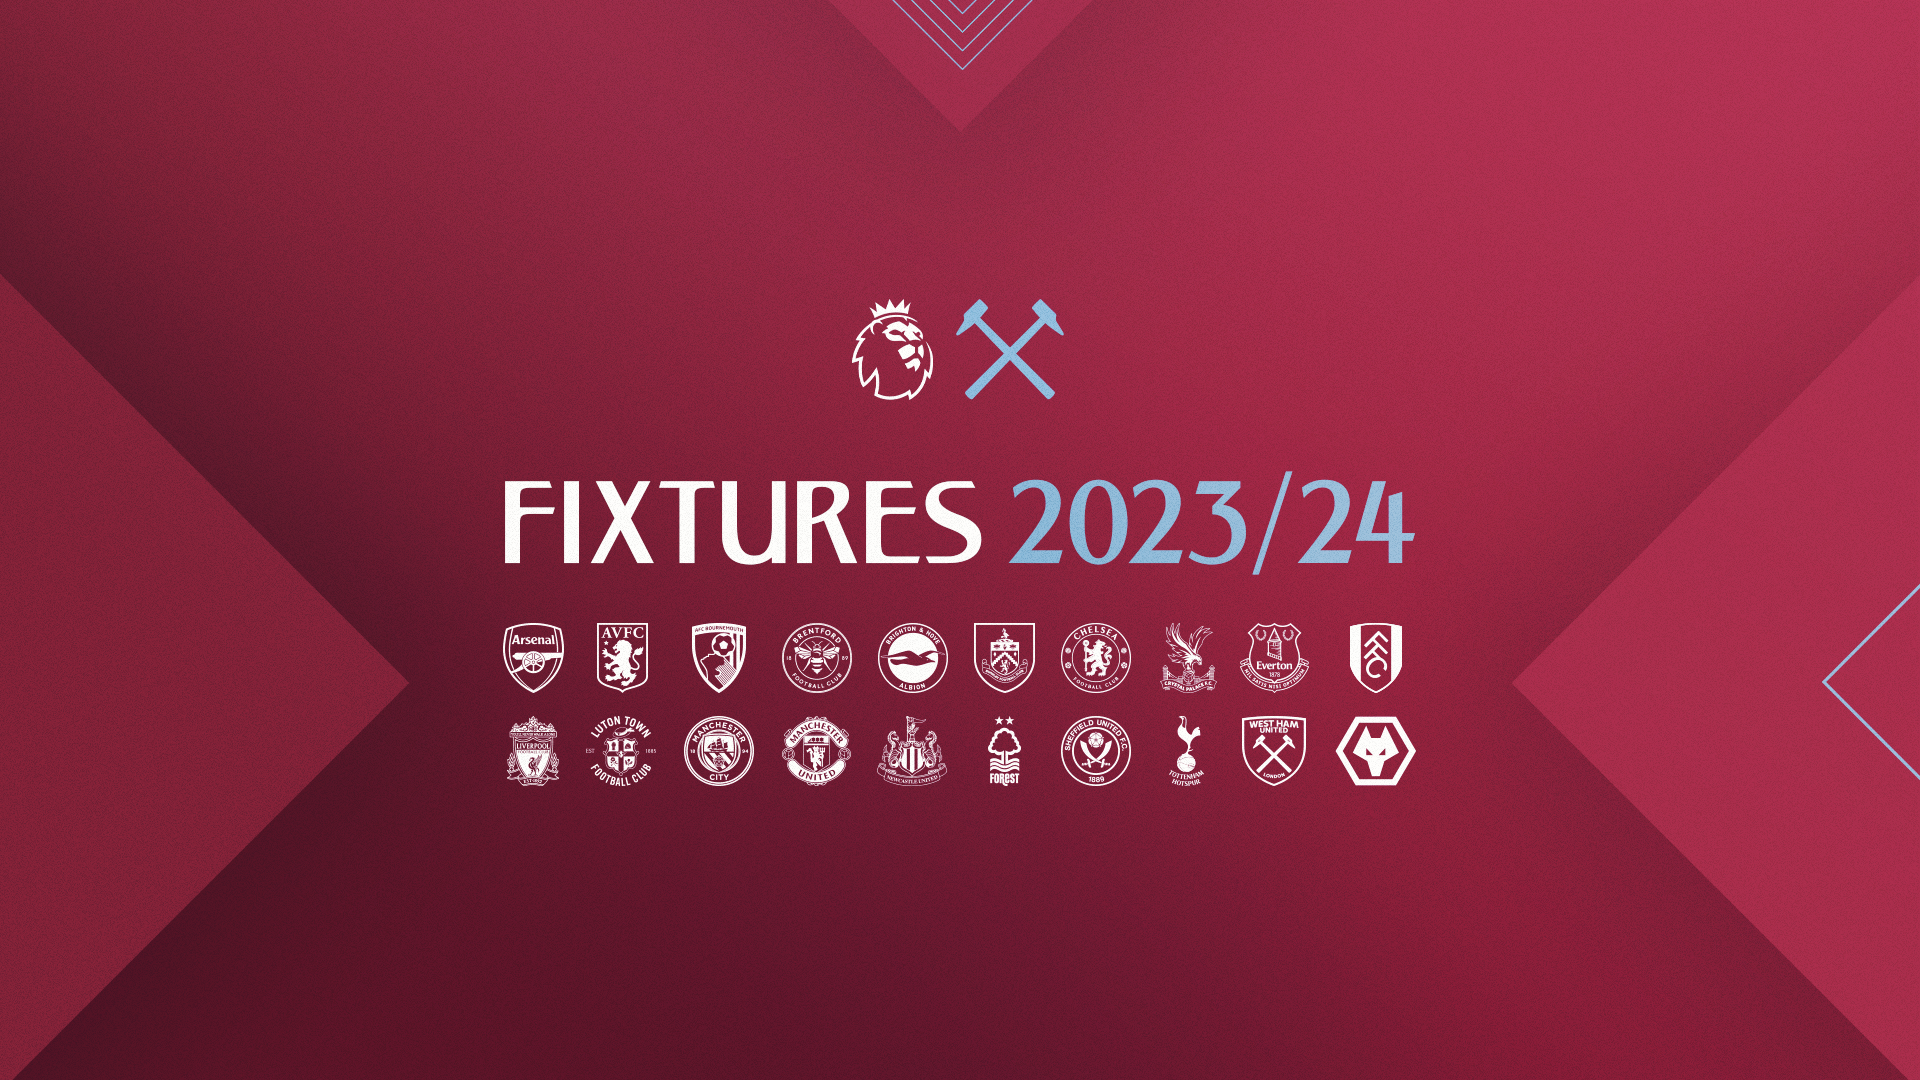 2023/24 fixtures